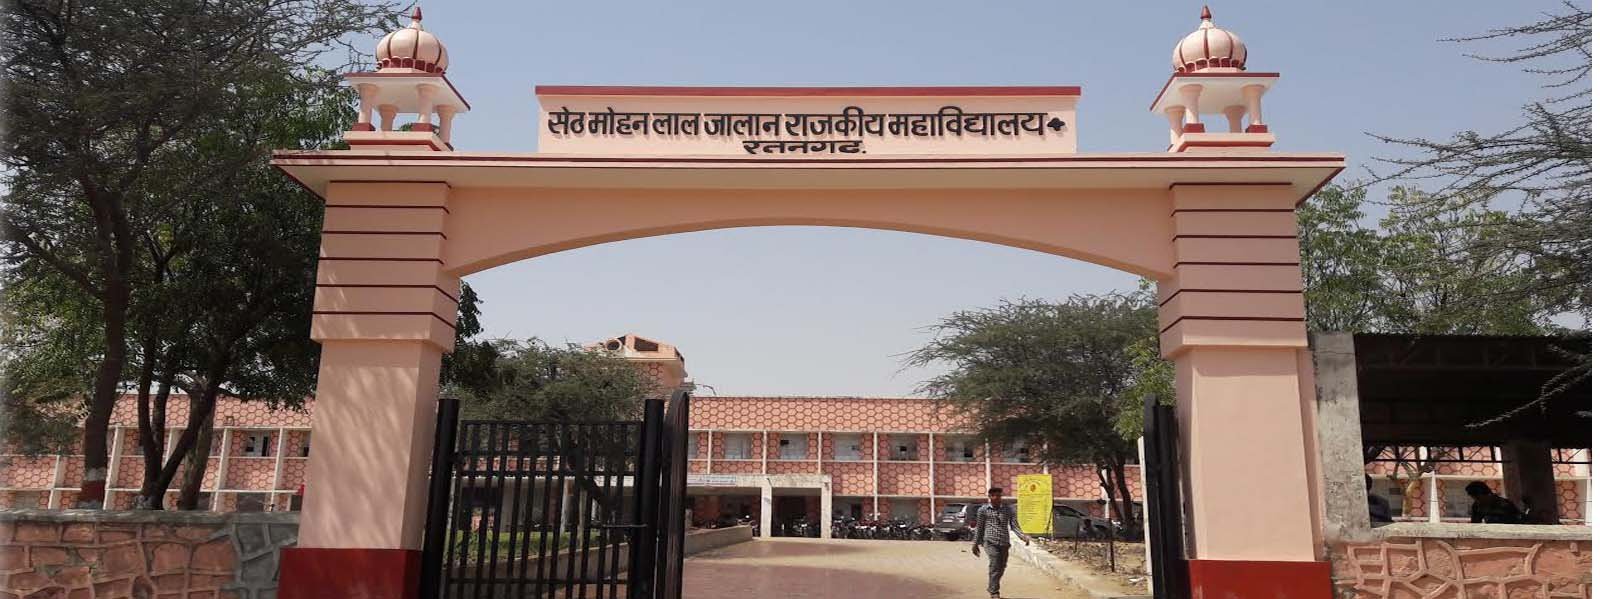 Campus Govt Mahavidyalaya Ratangarh in Churu